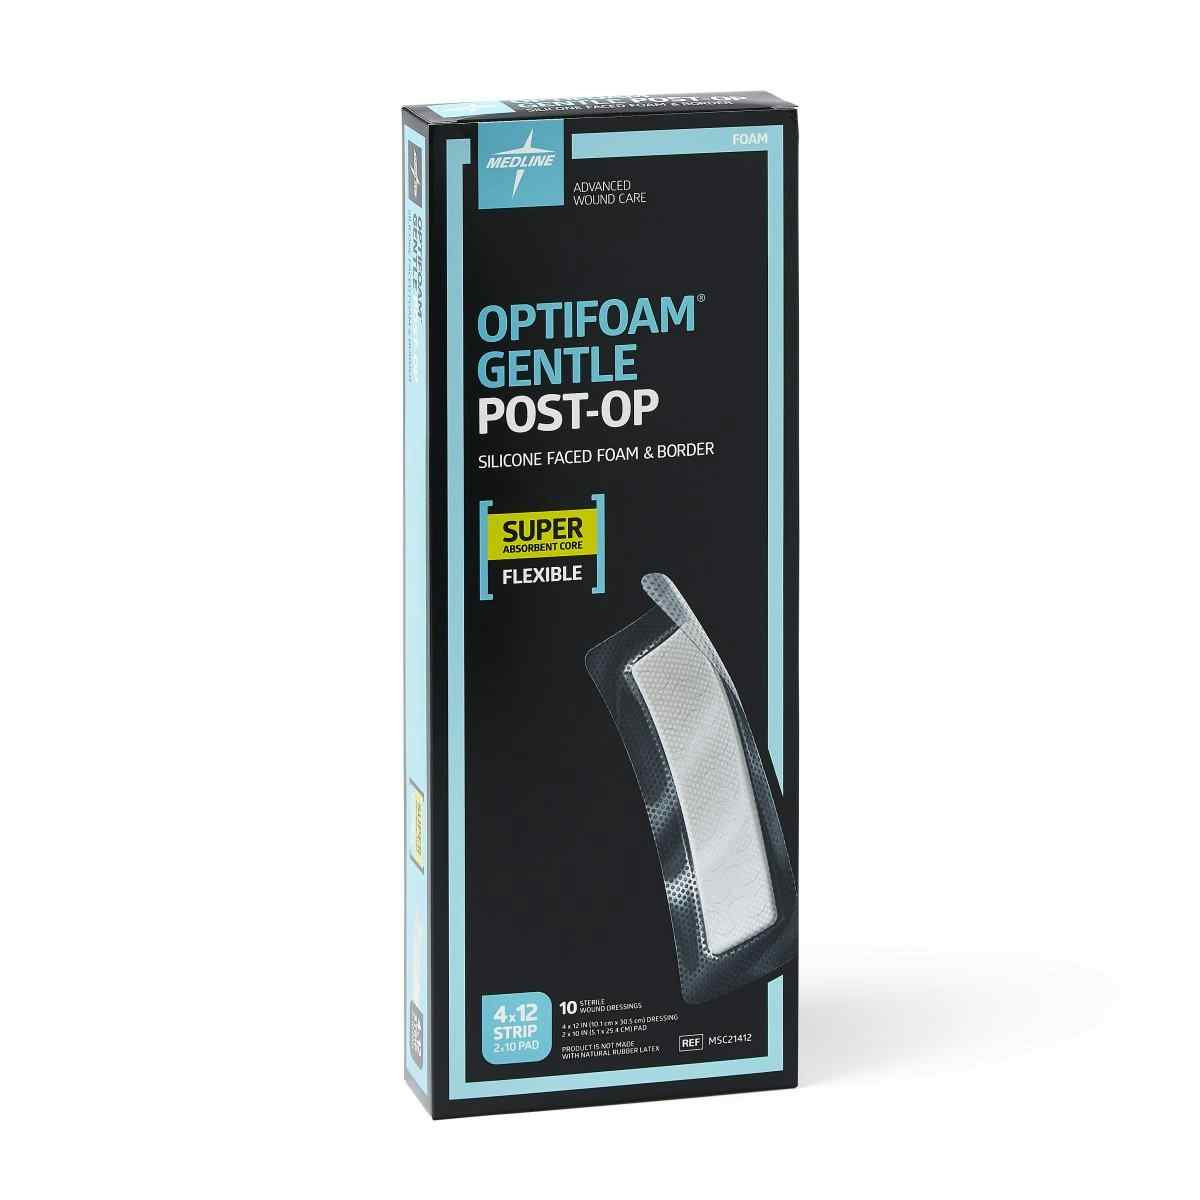 Optifoam Gentle Post-Op Silicone-Faced Foam Dressing, MSC21412Z, 4" X 12" - Box of 10 